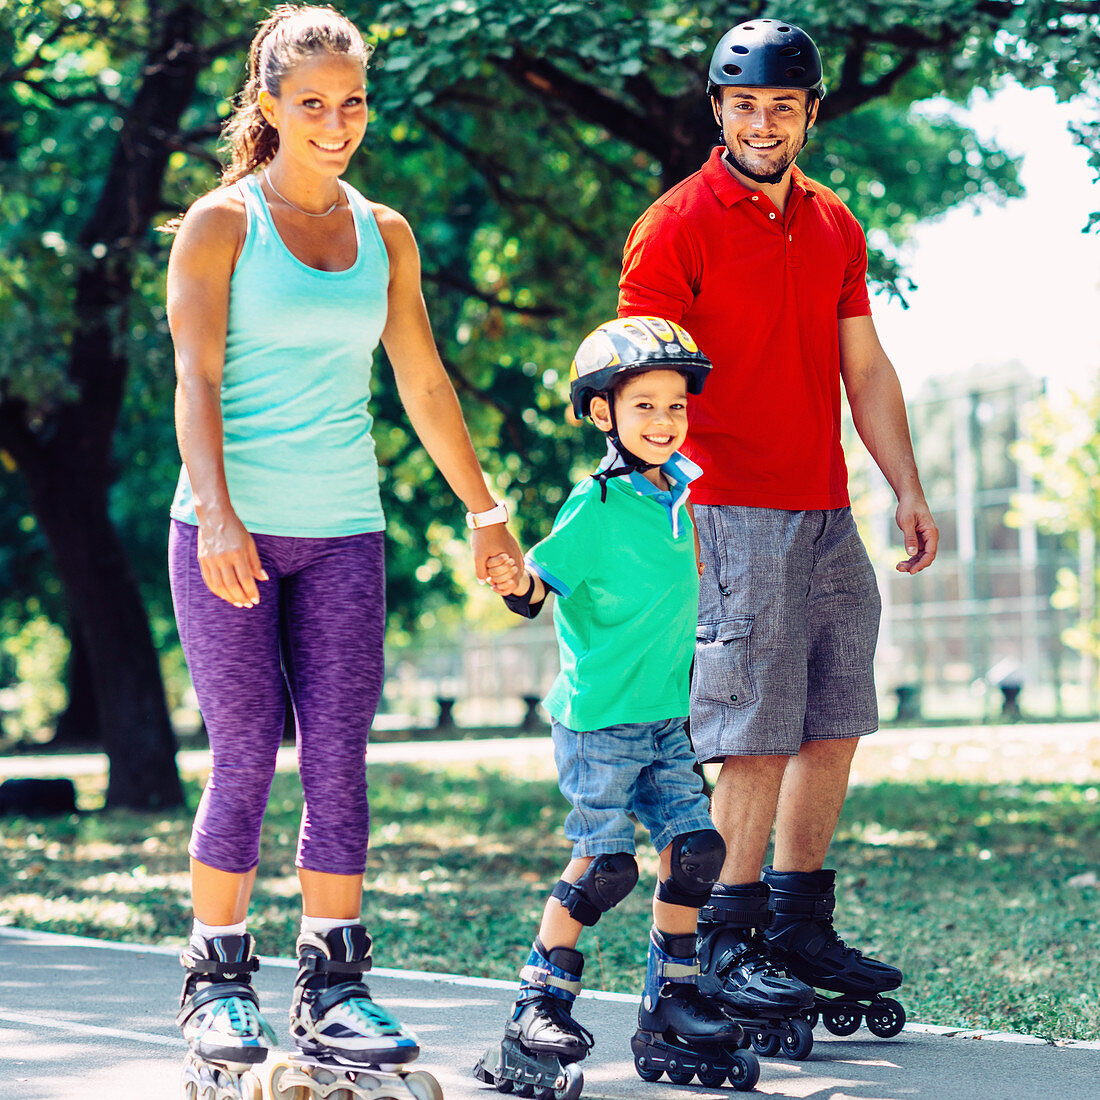 Portrait of family on roller skates in park